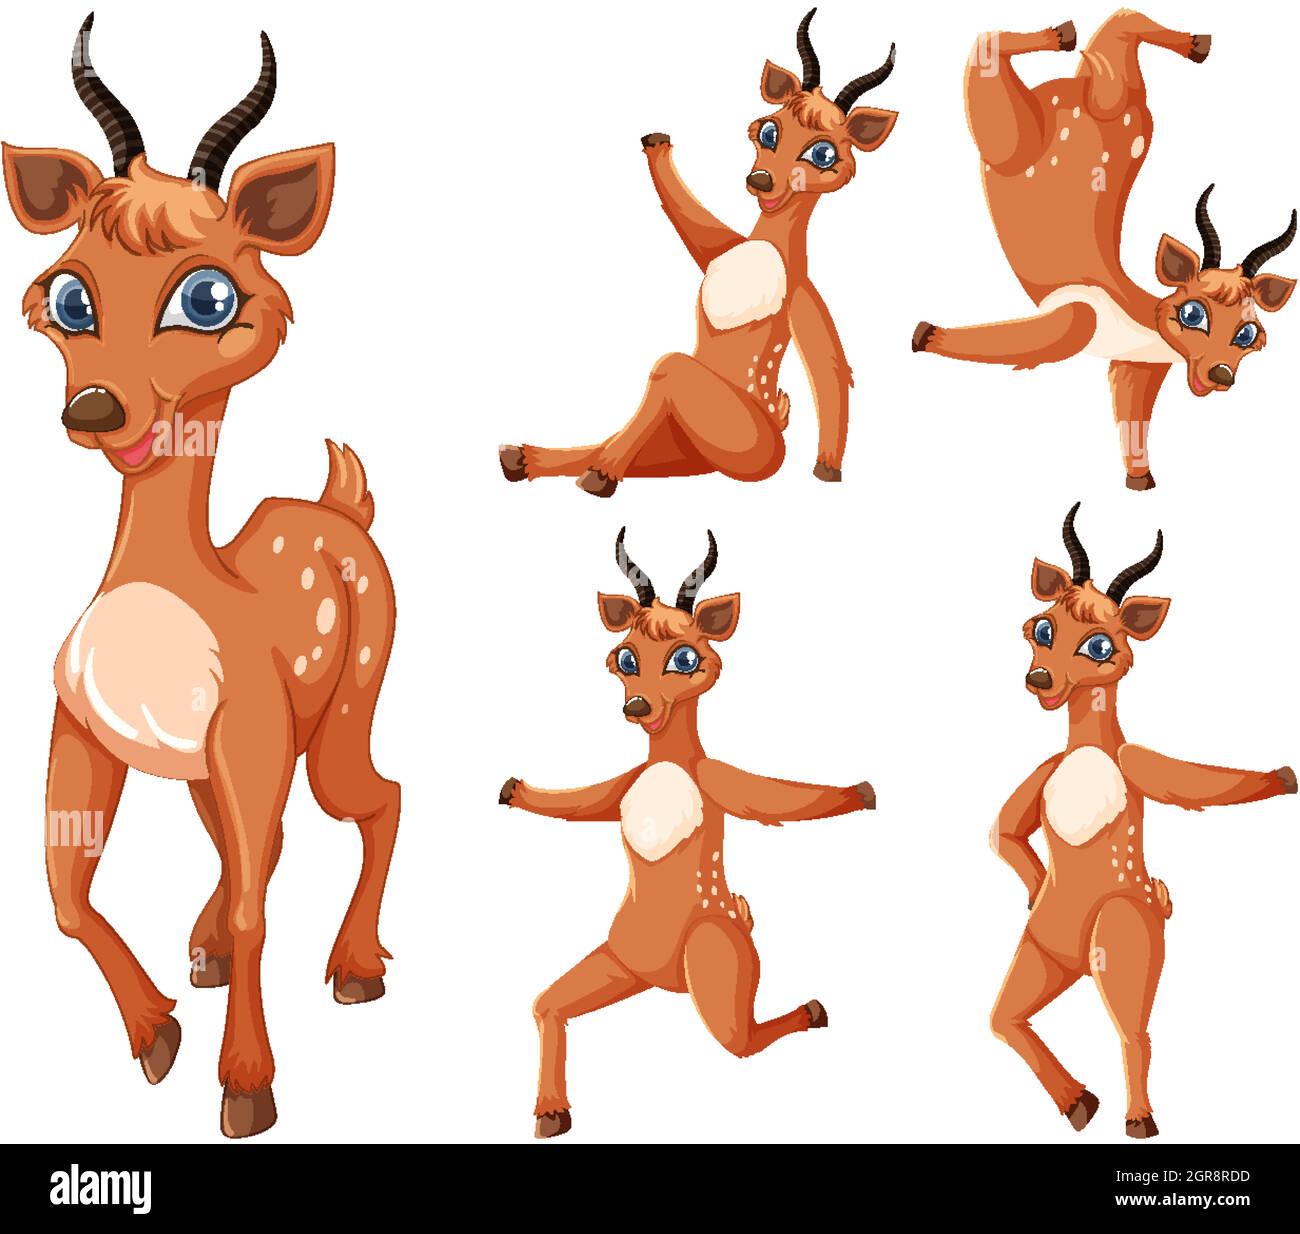 Ensemble de personnages de dessin animé gazelle Illustration de Vecteur